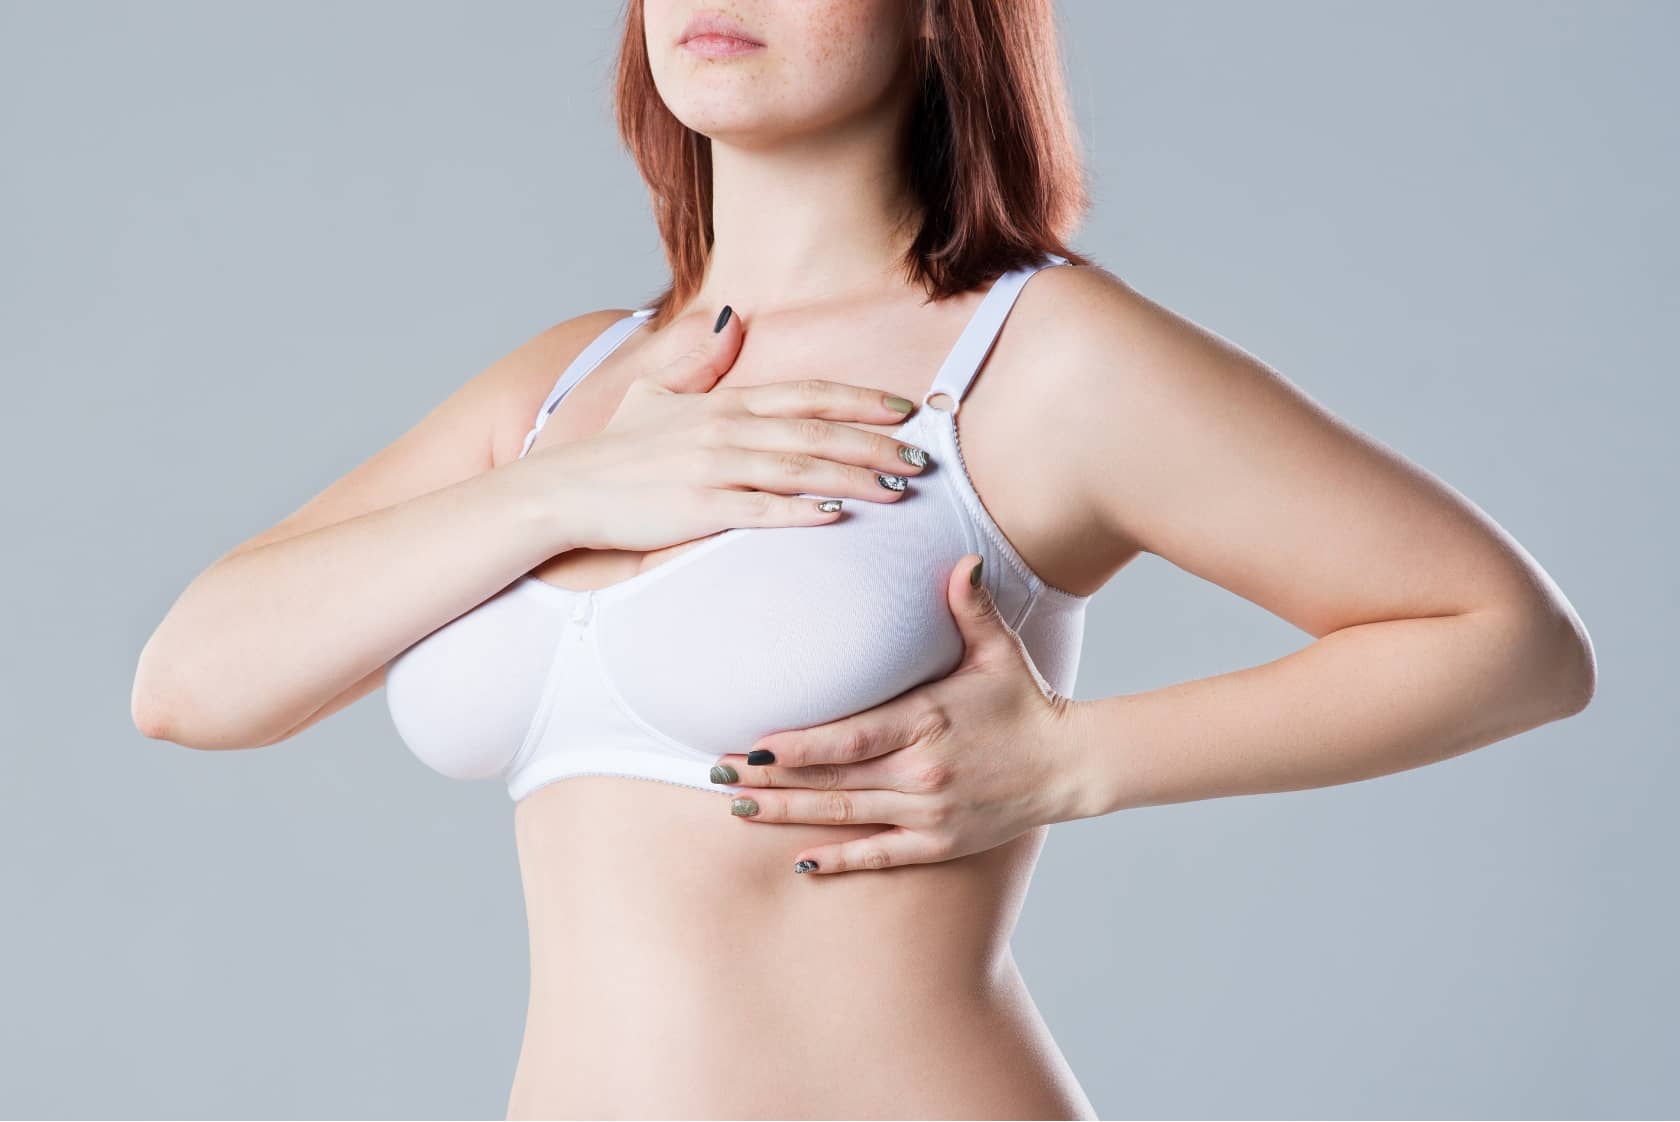 Une augmentation mammaire augmente-t-elle un risque de cancer du sein ?, Dr Sarfati